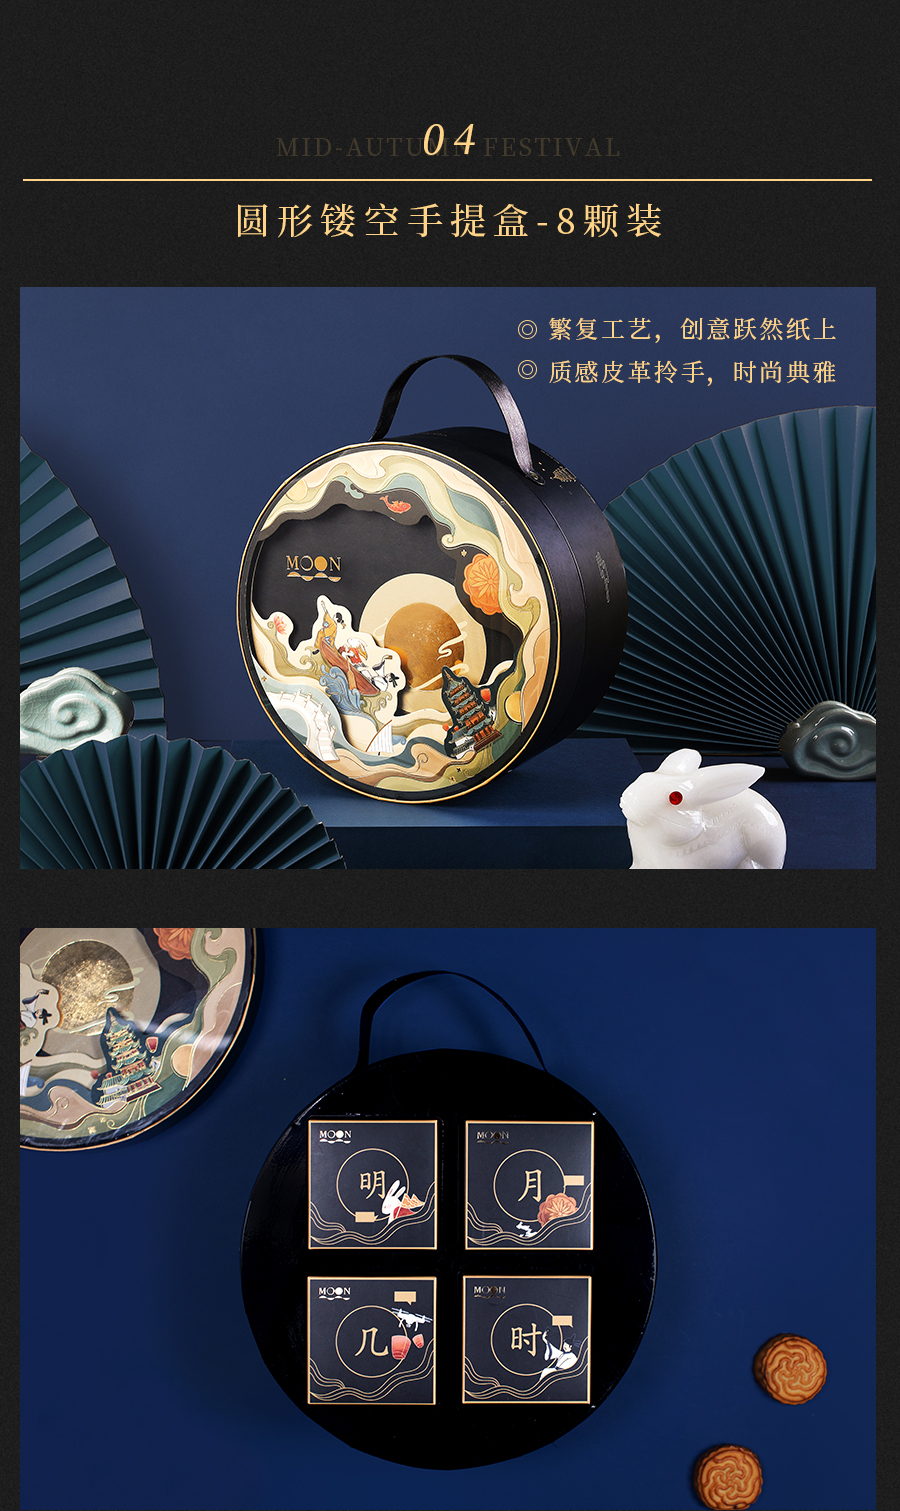 【方森园】中秋月饼礼盒包装设计——《潮前现月》 